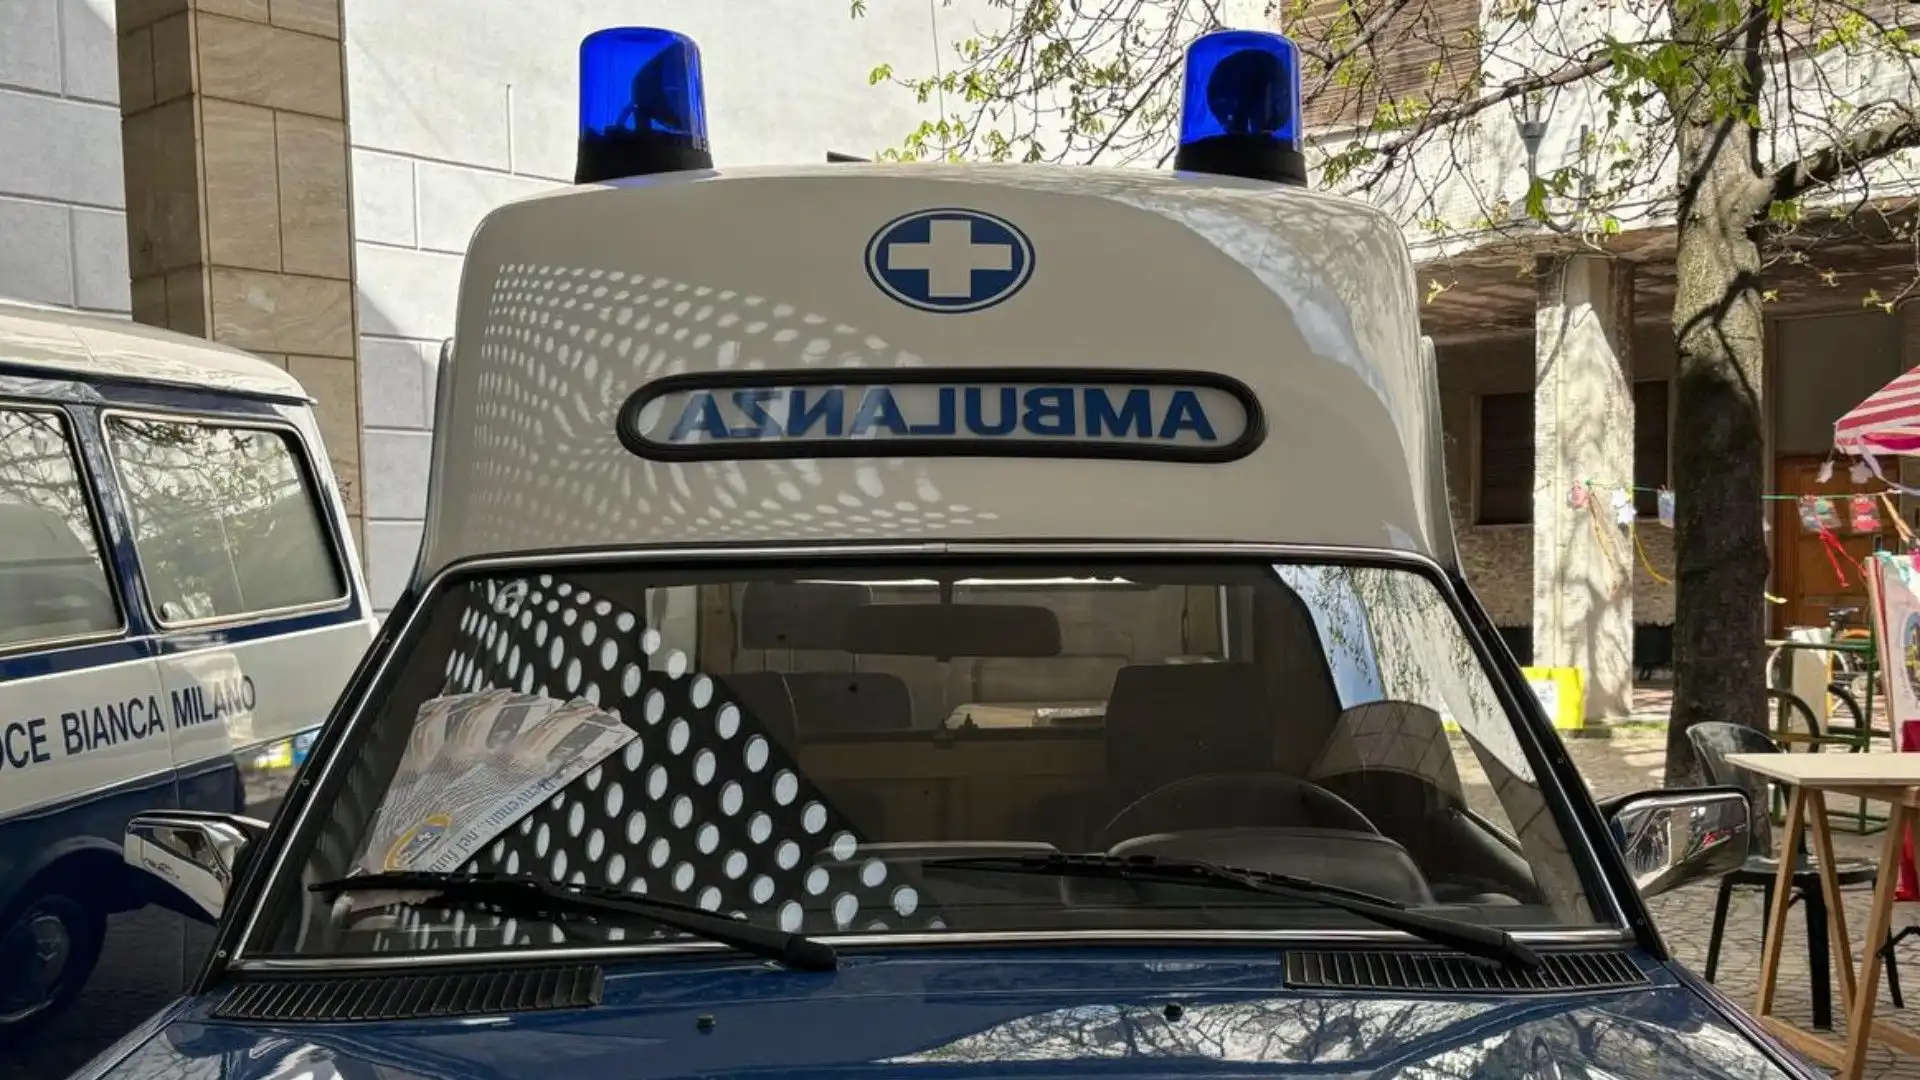 I lampeggianti blu permettevano agli altri automobilisti di notare meglio l'ambulanza per liberare il passaggio